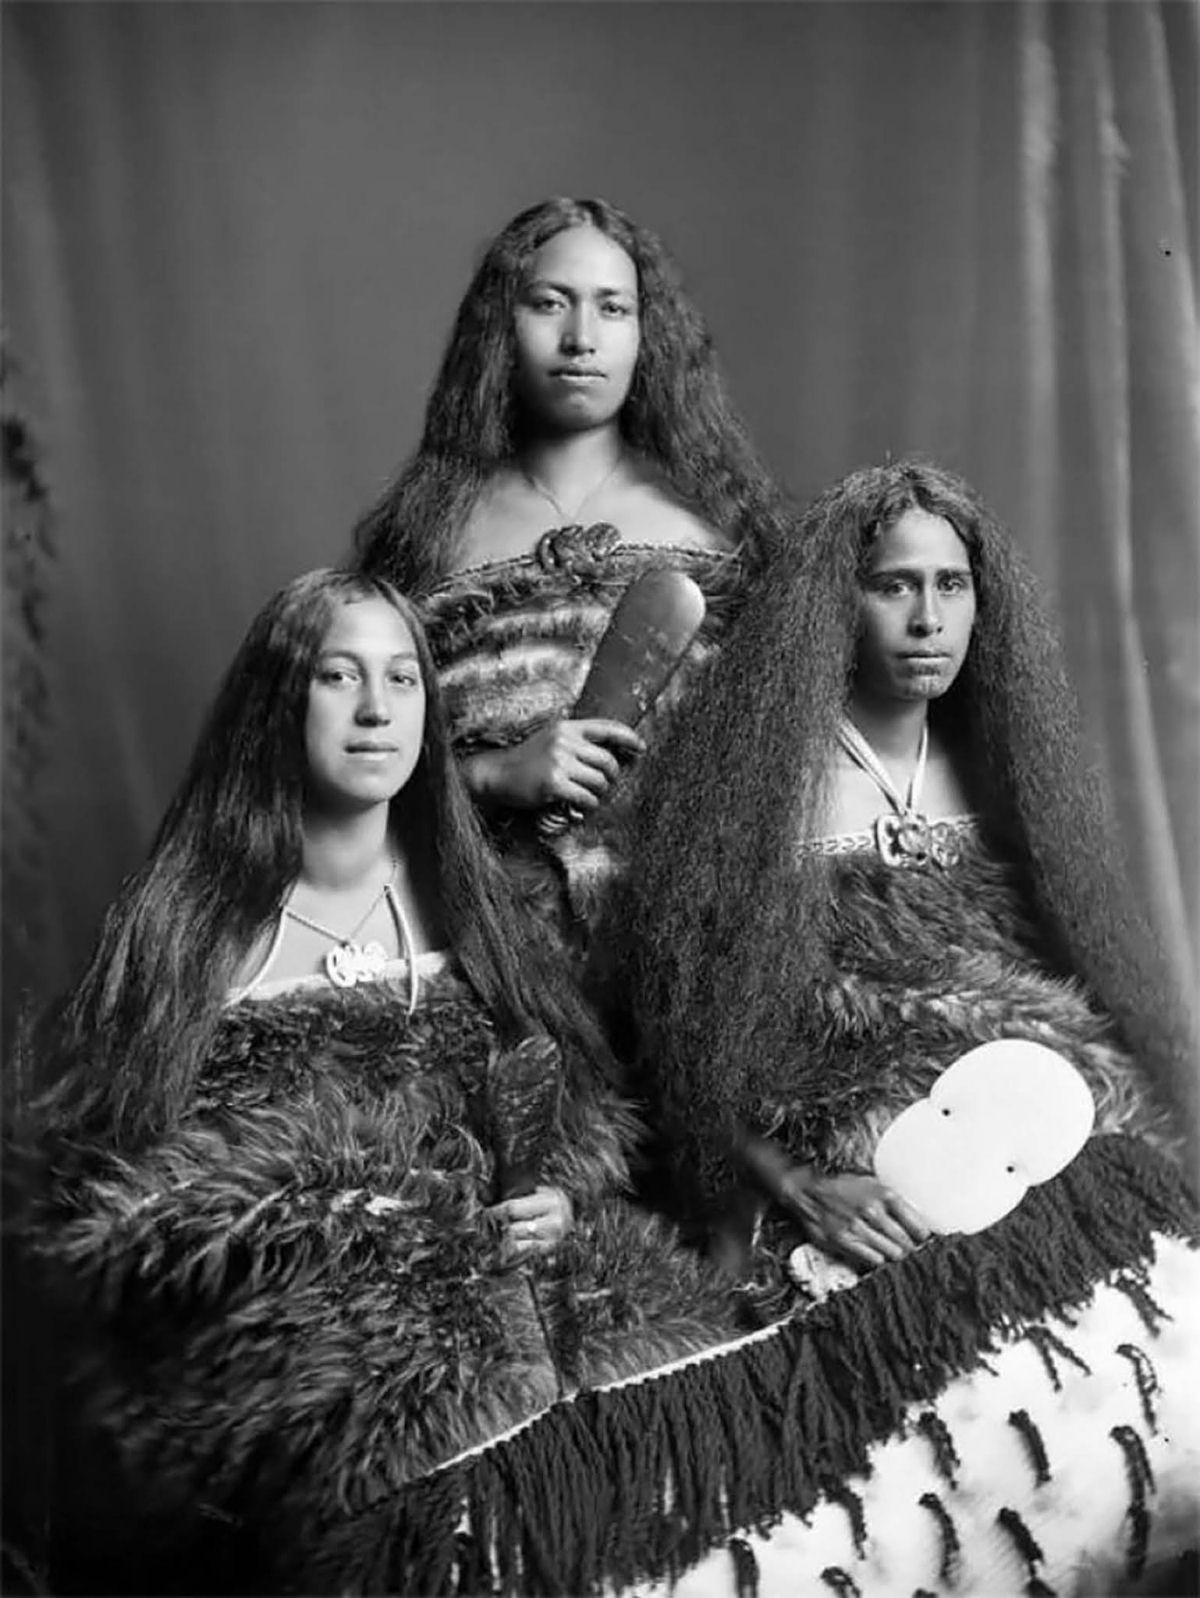 Antigas fotos de Maoris antes das tatuagens tā moko serem proibidas pelos britânicos 19